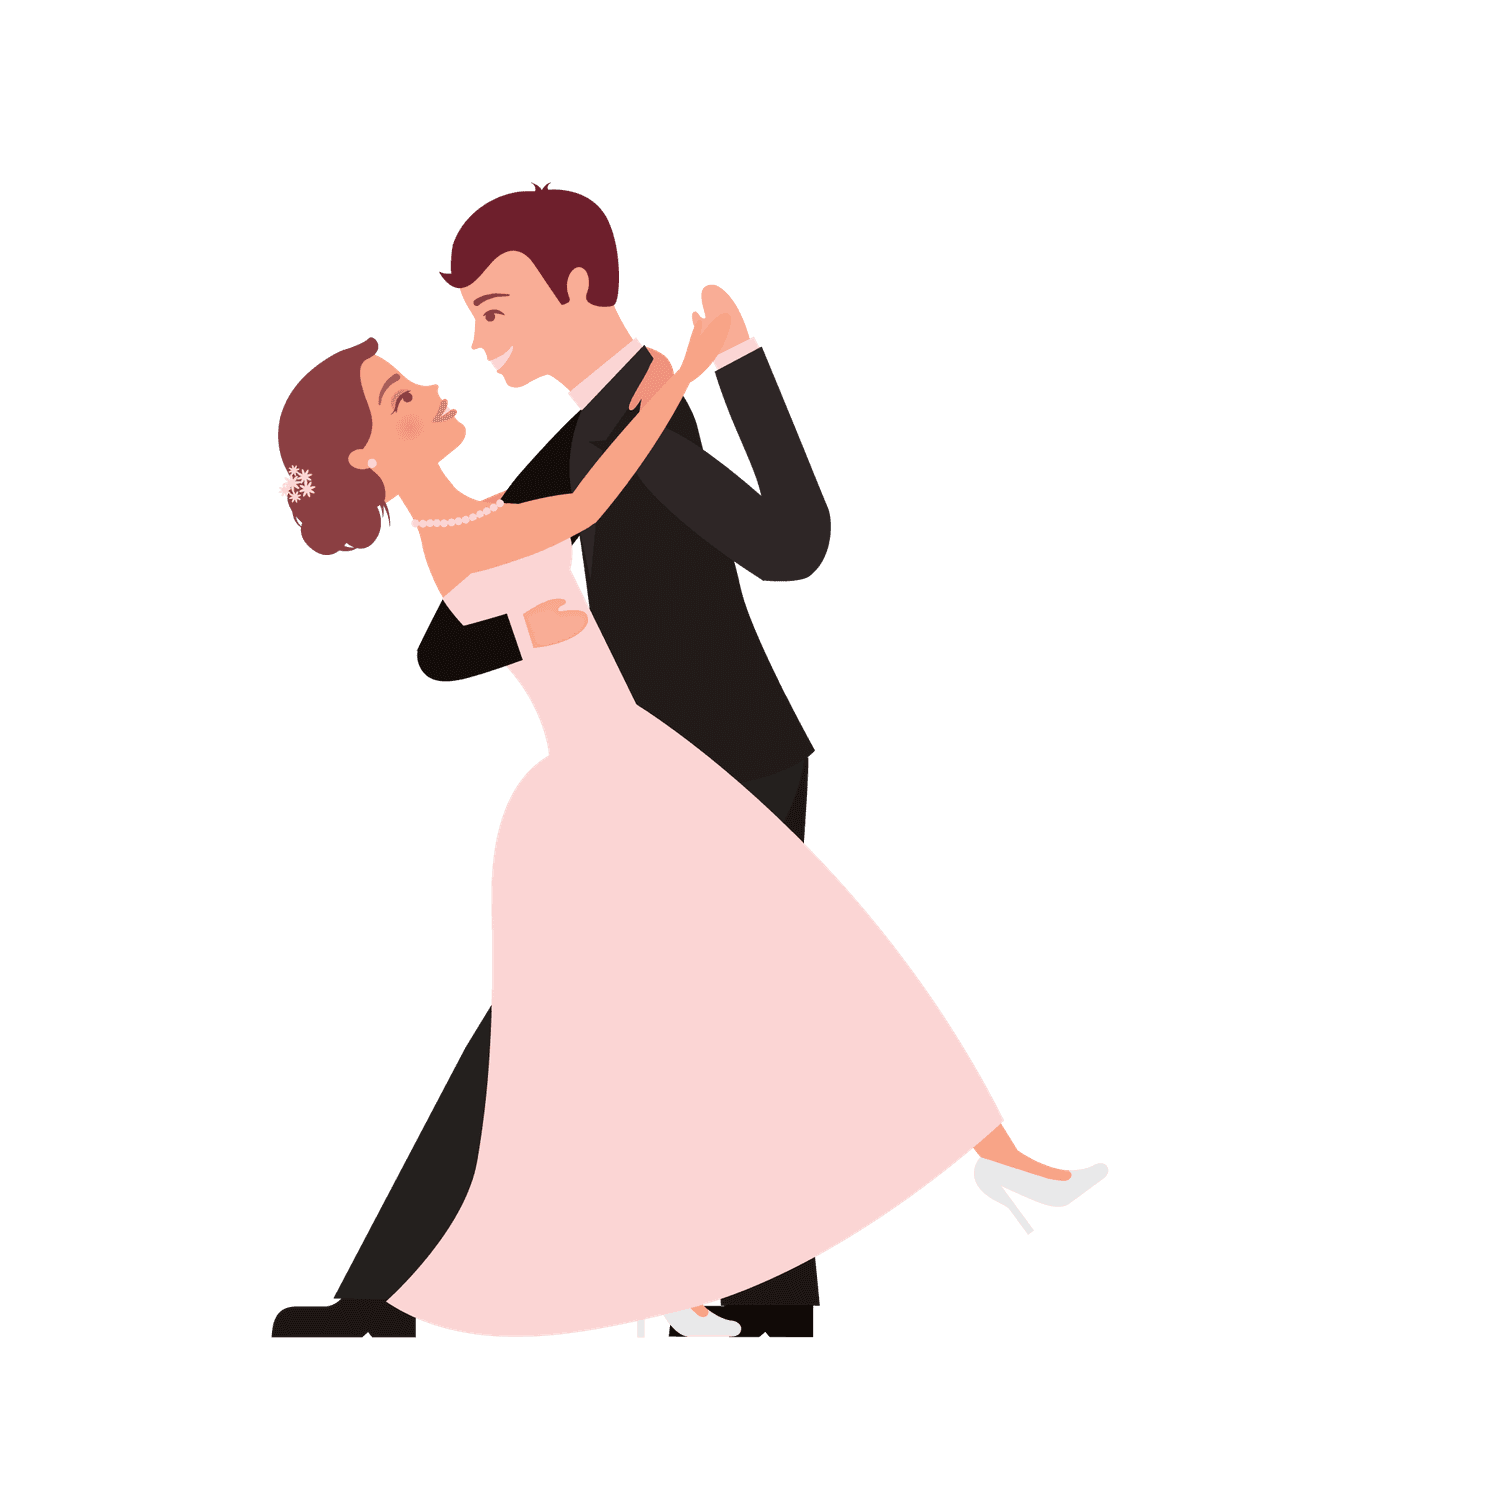 flat wedding couples illustration